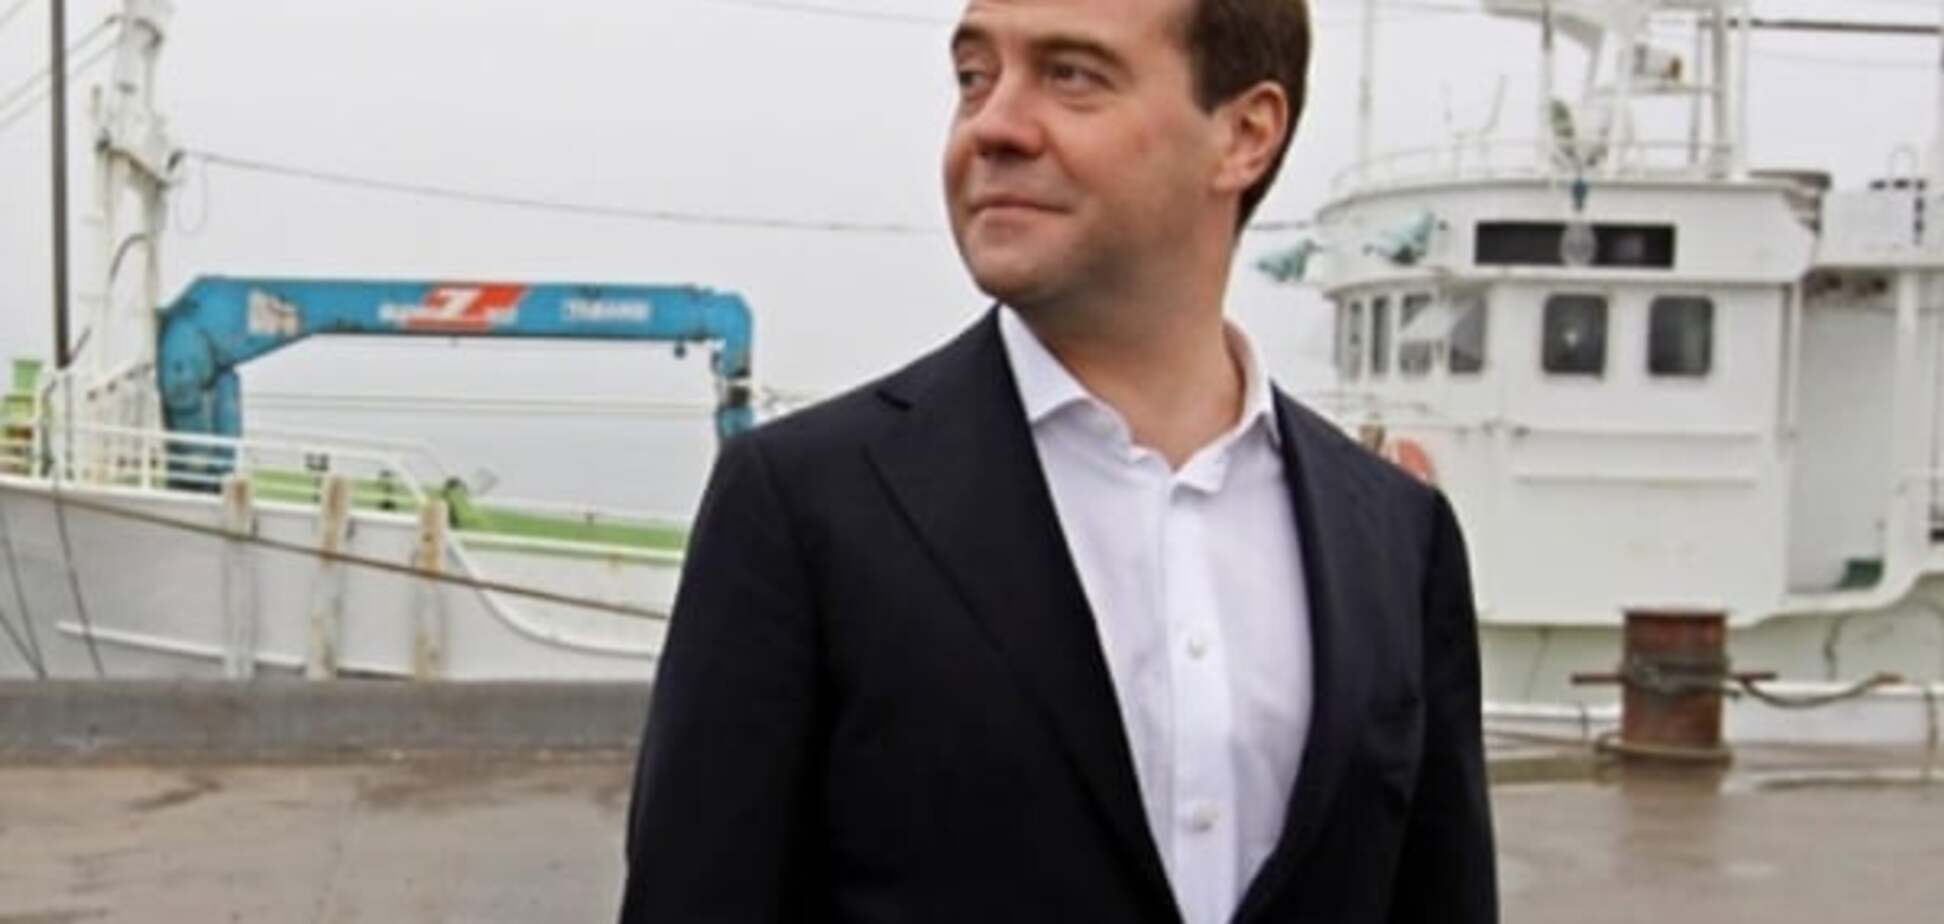 Опять скандал: Медведев разозлил Японию своим визитом на Курилы